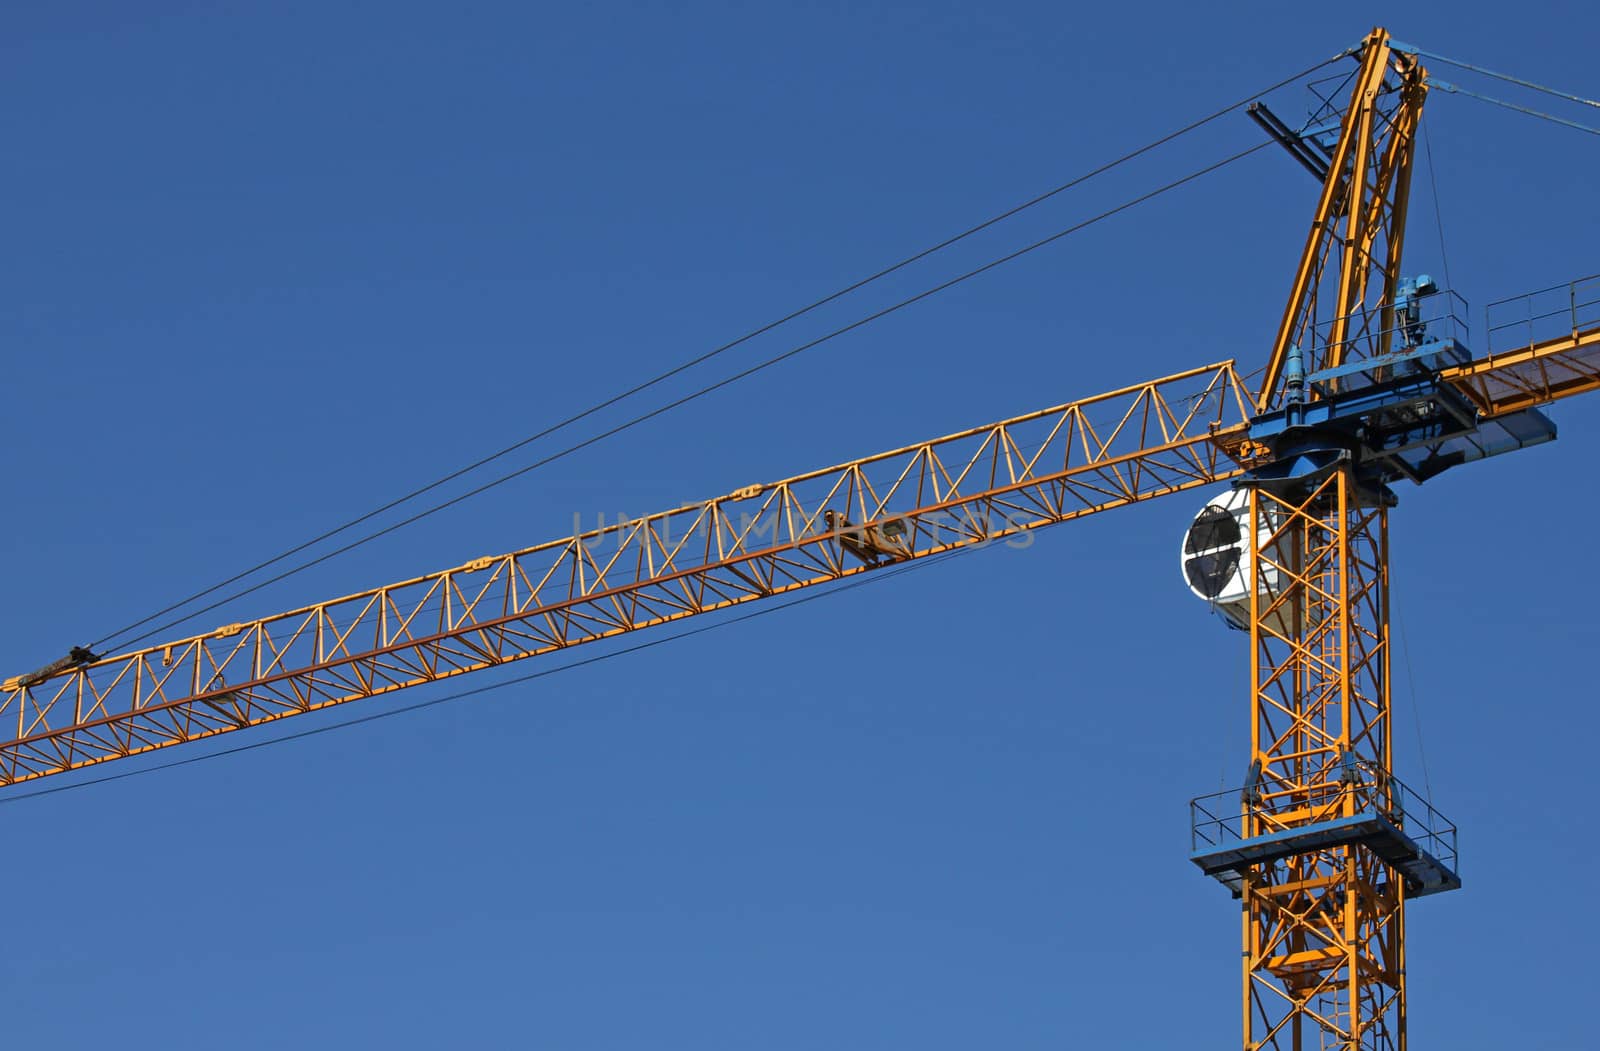 building crane over blue sky